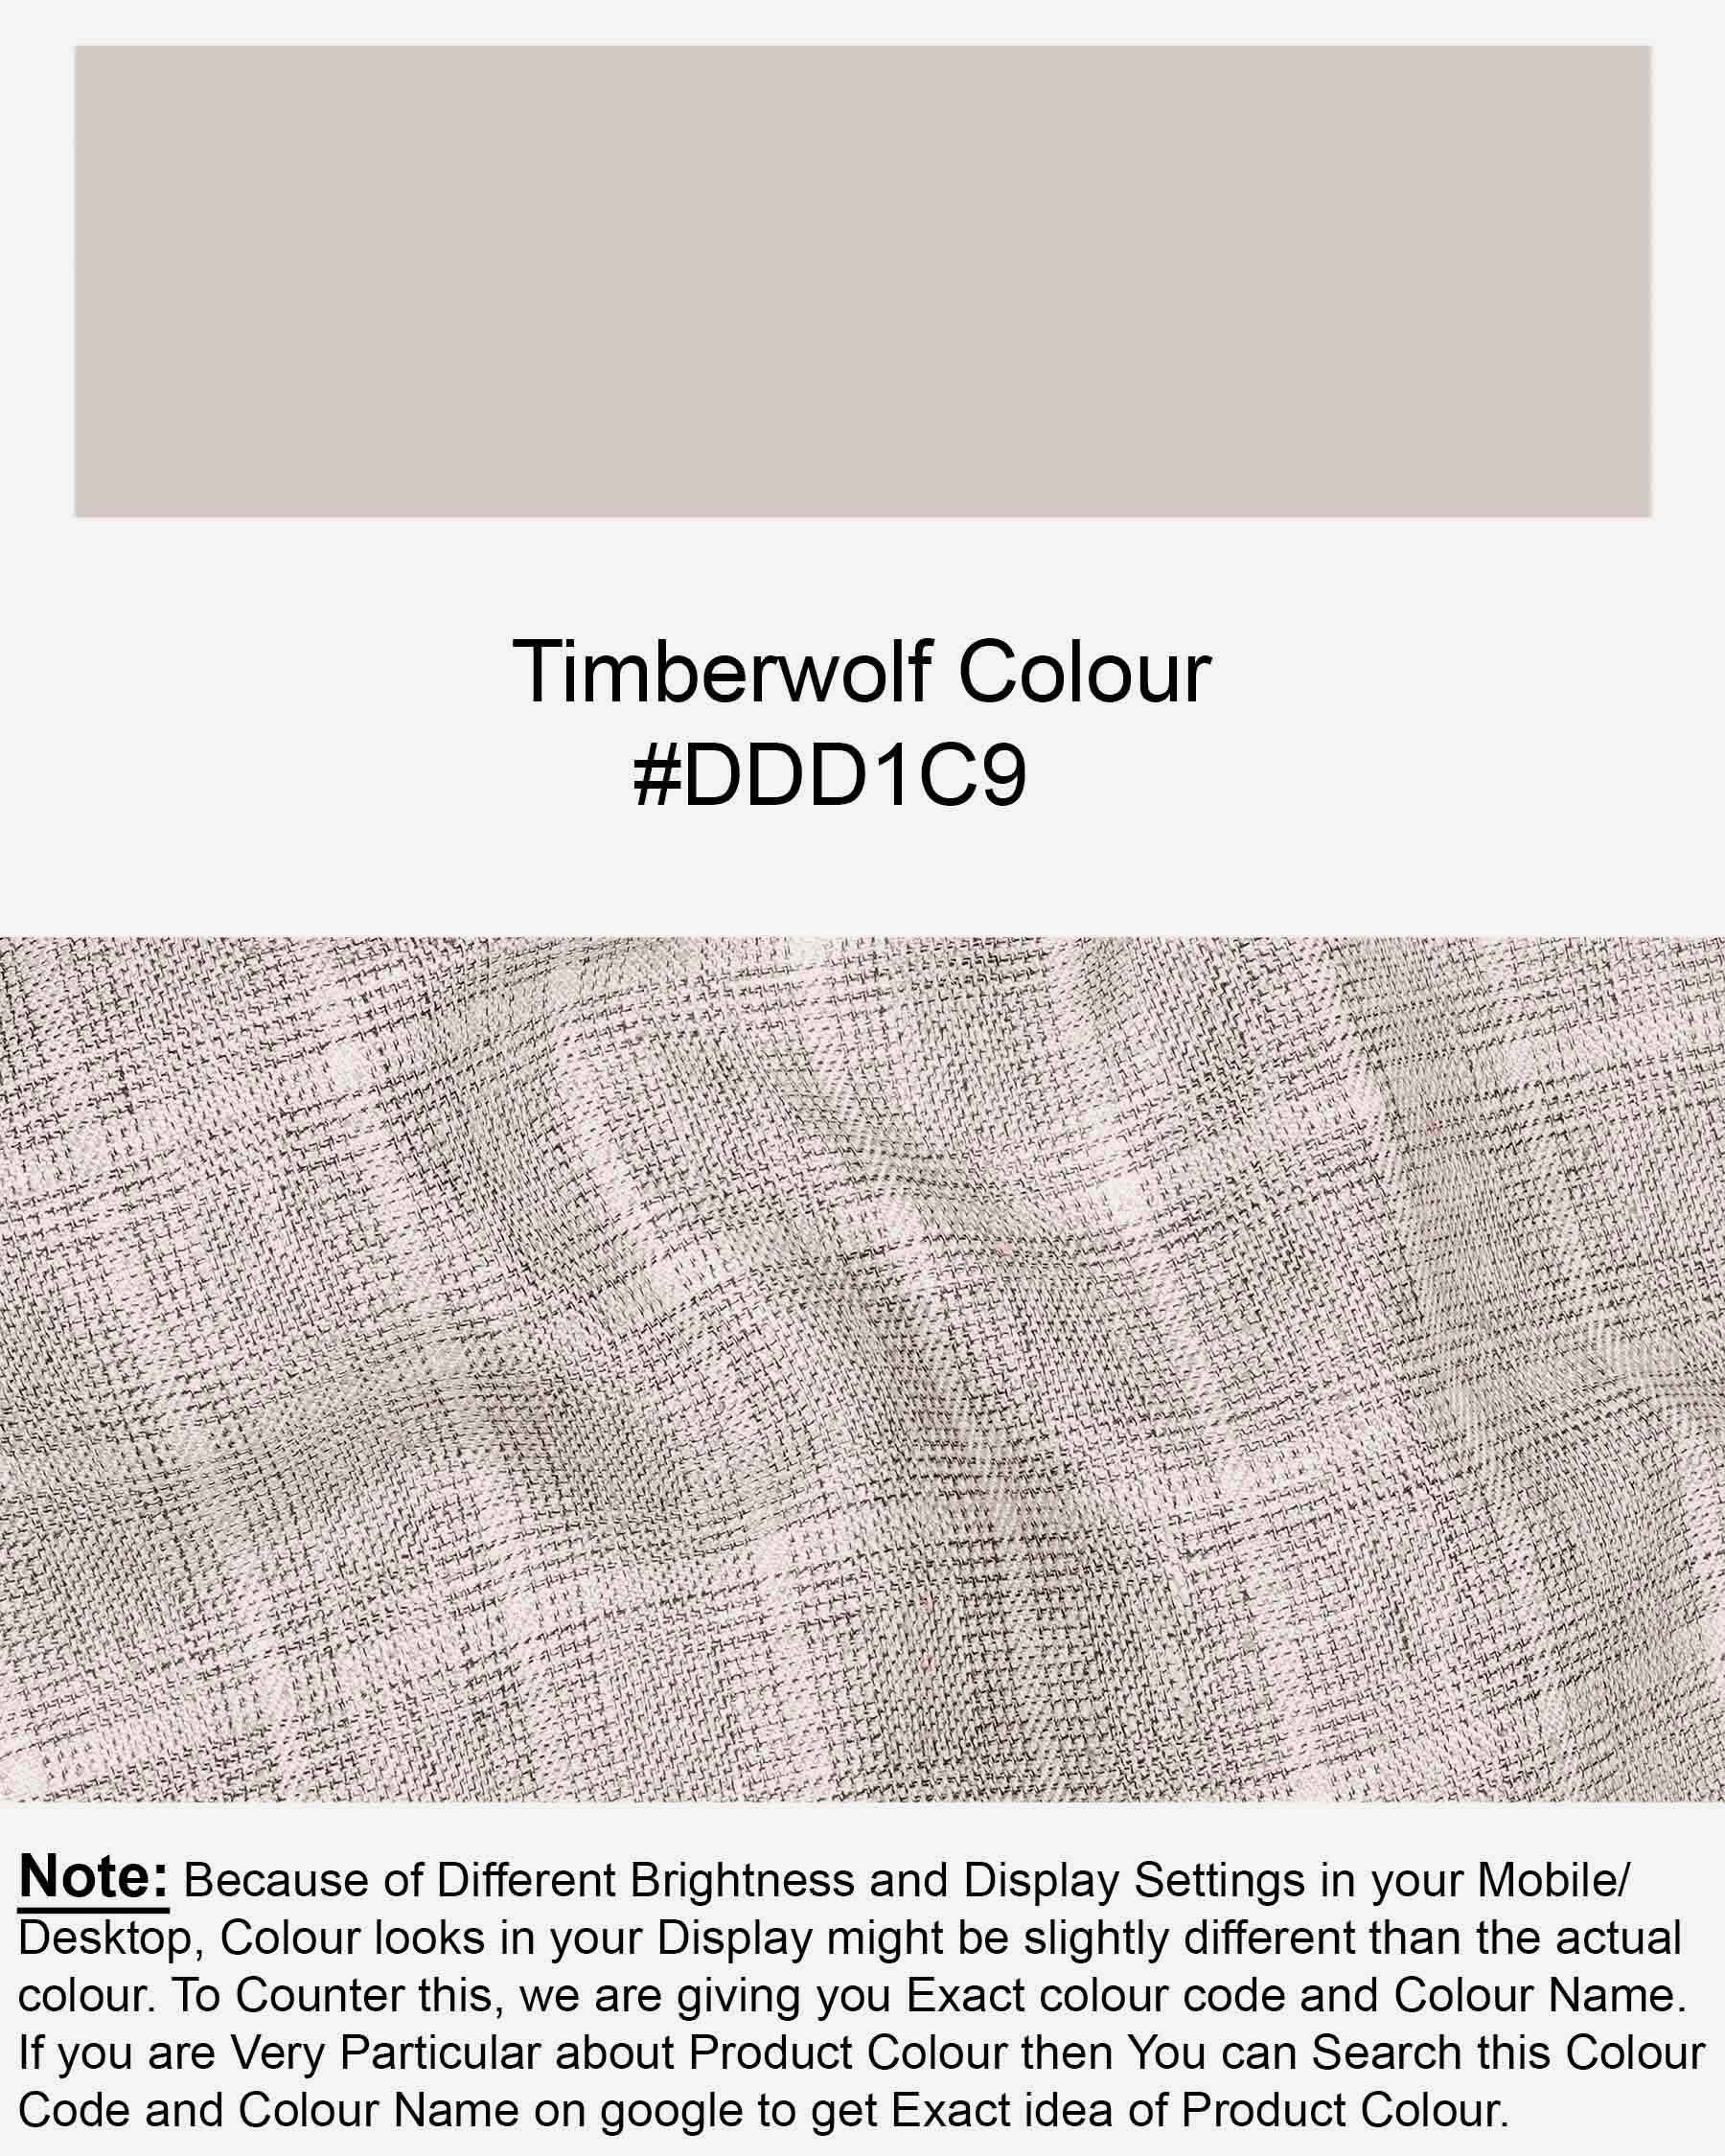 Timberwolf light Brown Plaid Waistcoat V1920-36, V1920-38, V1920-40, V1920-42, V1920-44, V1920-46, V1920-48, V1920-50, V1920-52, V1920-54, V1920-56, V1920-58, V1920-60